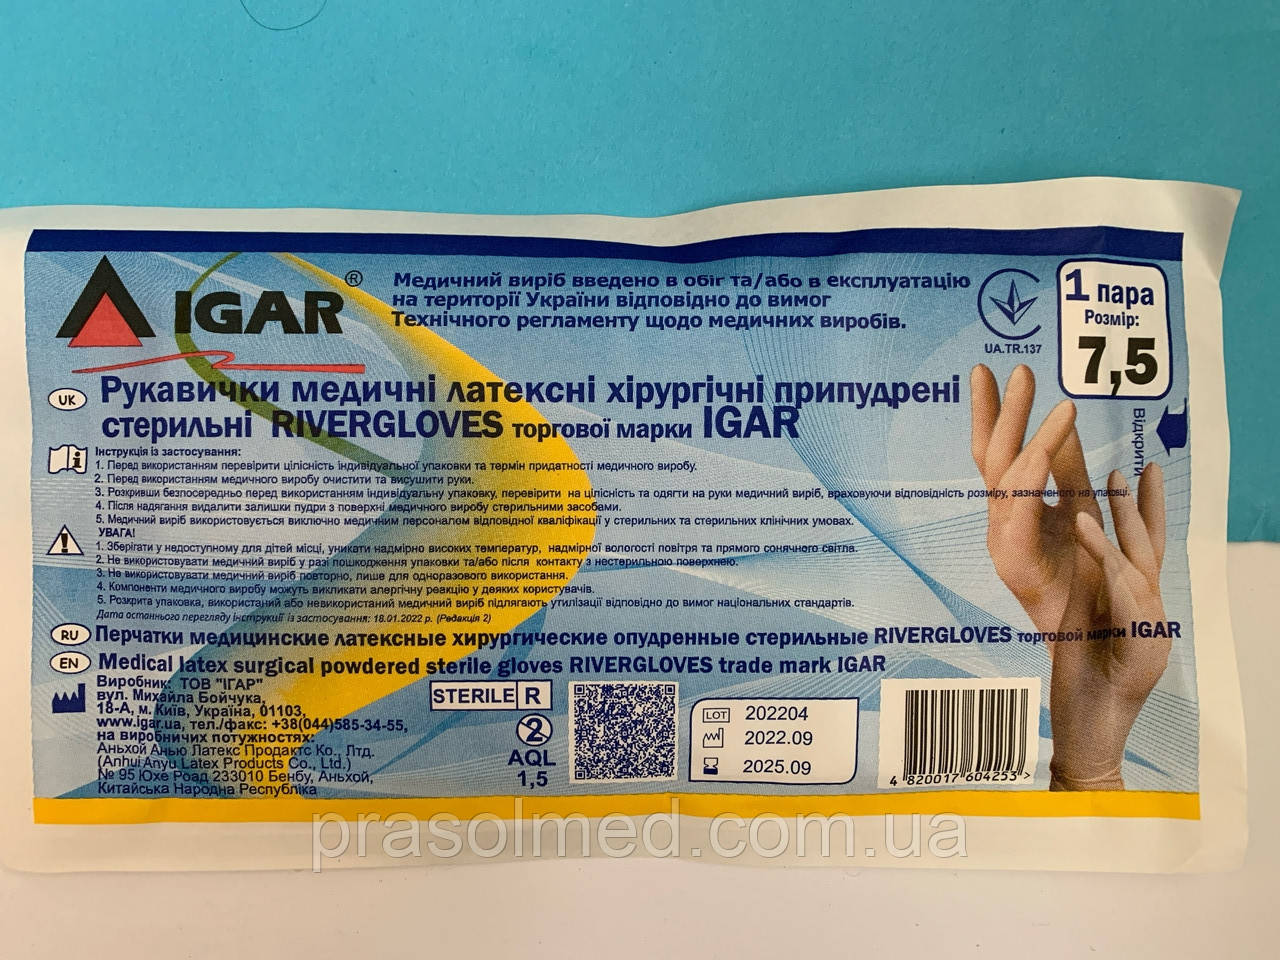 Рукавички латексні припудрені хірургічні стерильні RIVERGLOVES торгової марки "IGAR" р.7.5 (50пар/100шт. в уп.)